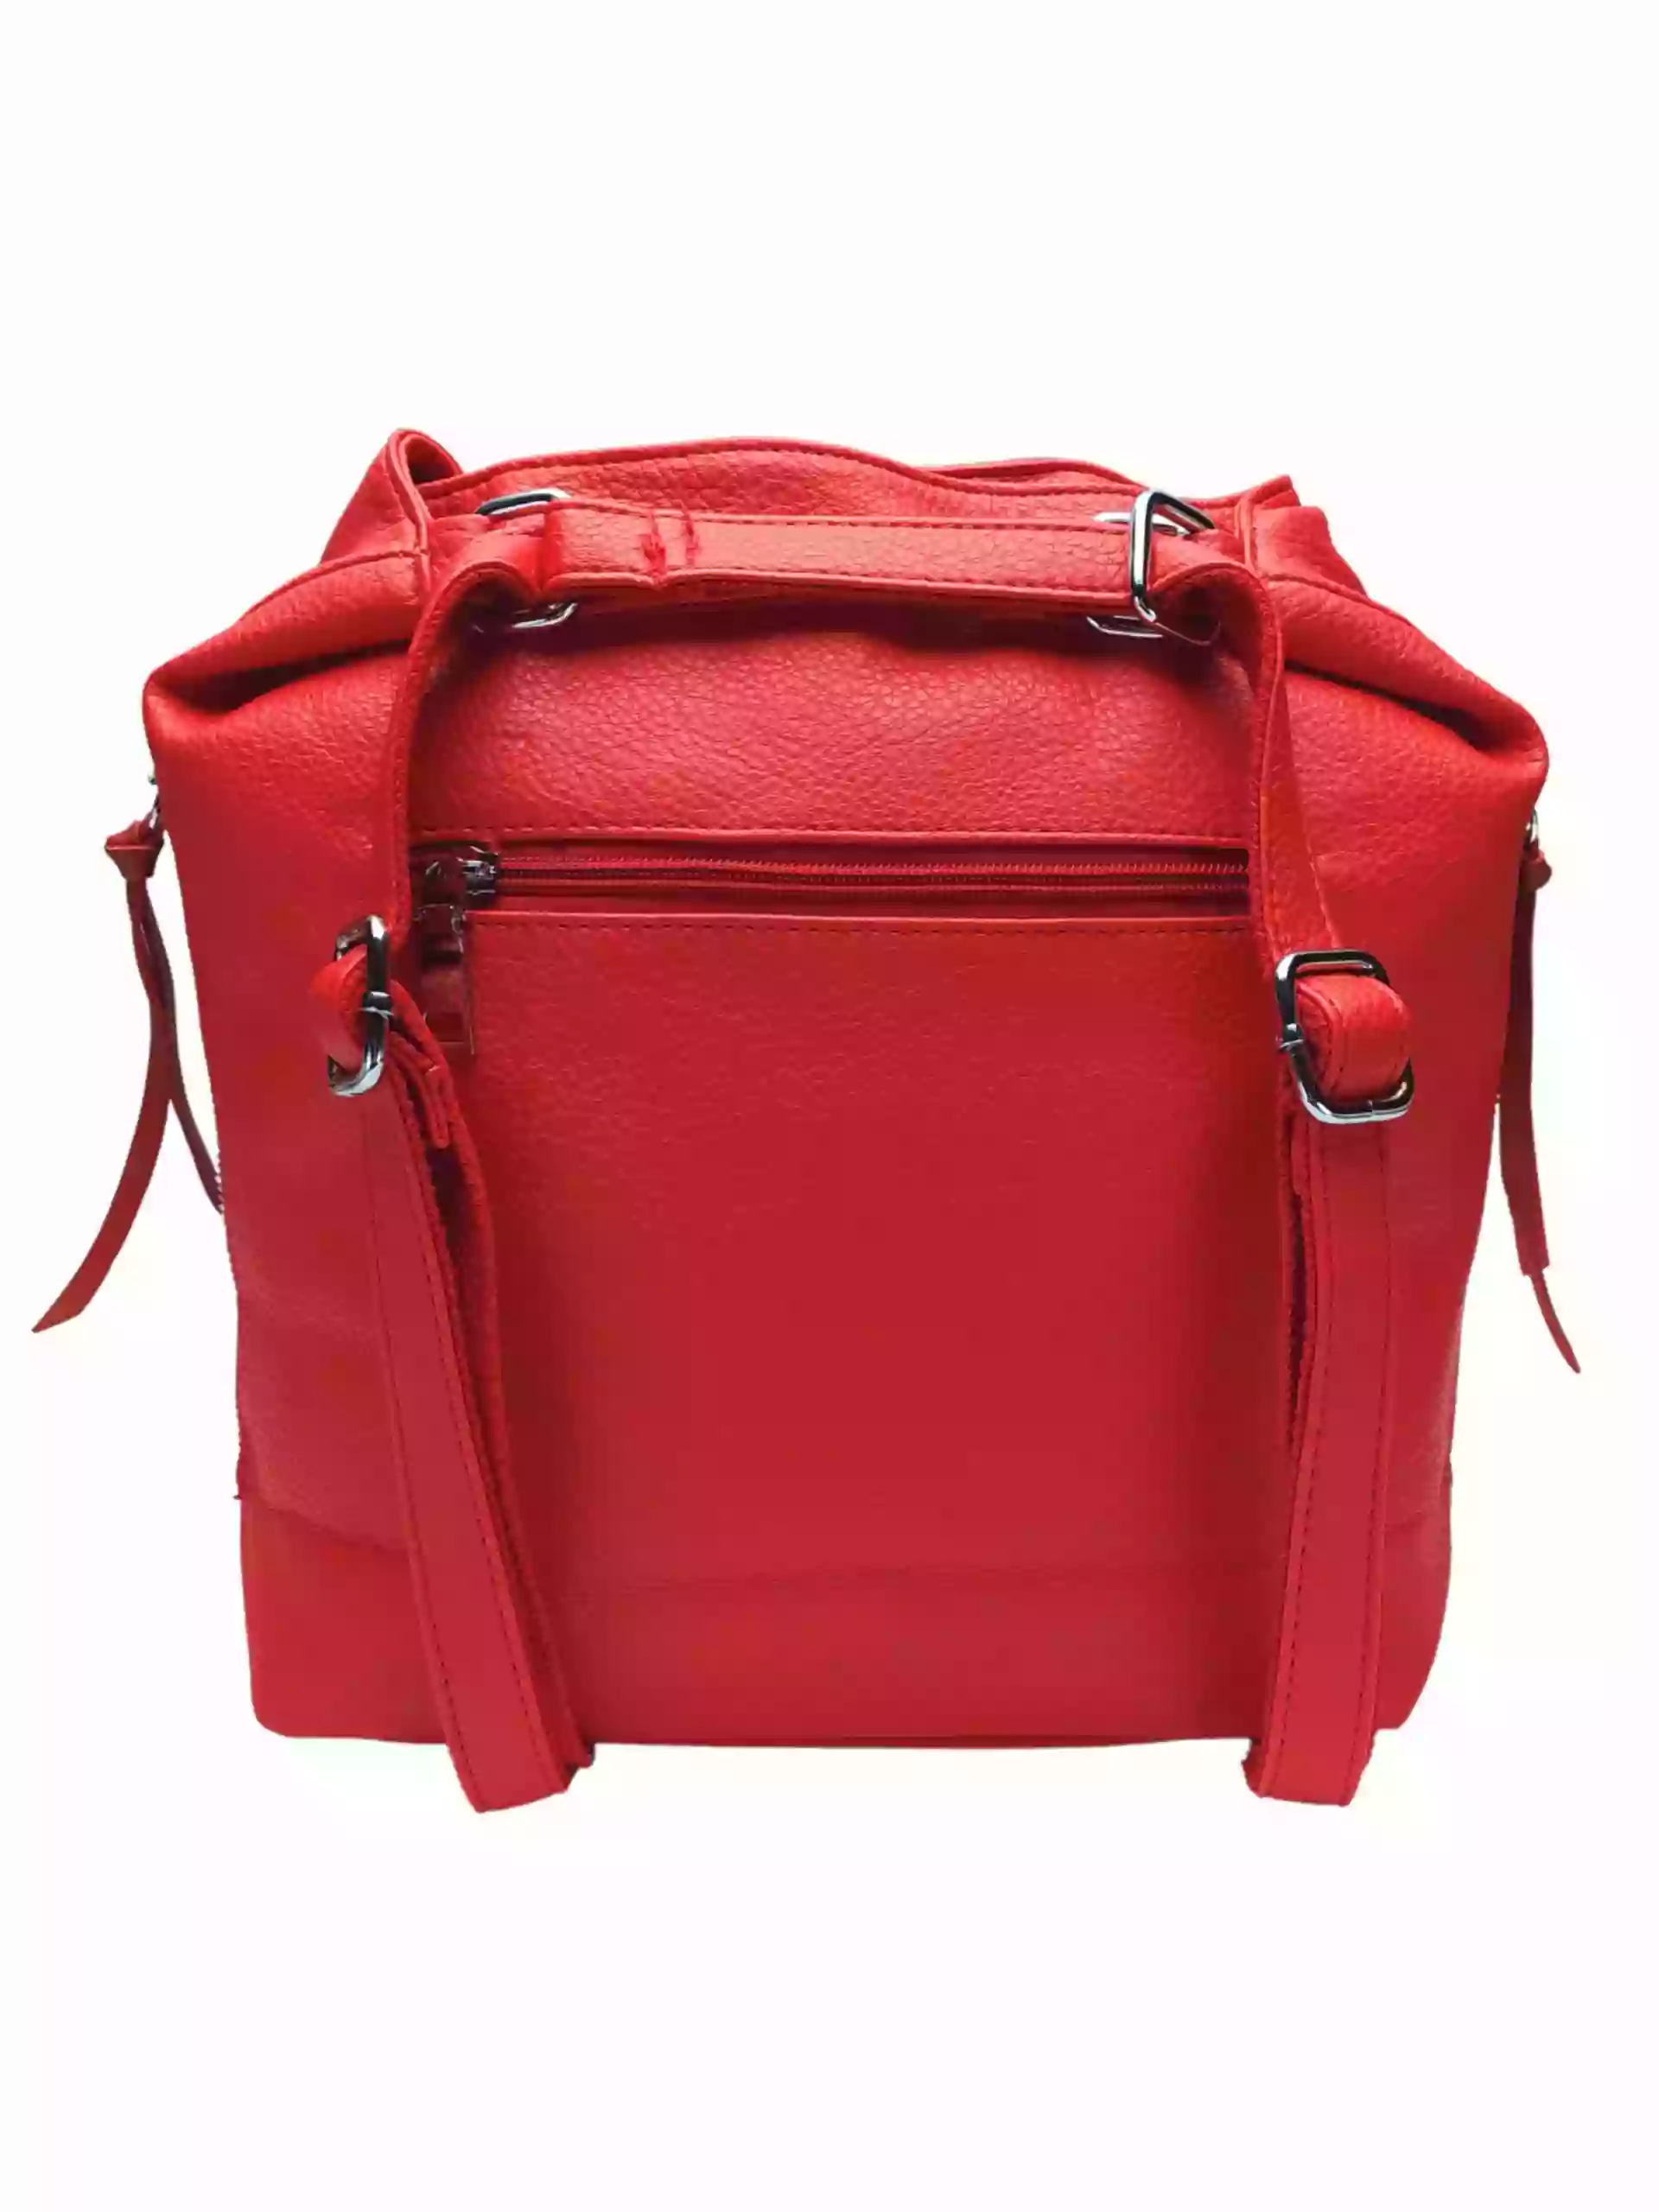 Střední červený kabelko-batoh 2v1 s praktickými bočními kapsami, Miss Moda, 980882, zadní strana kabelko-batohu 2v1 s popruhy